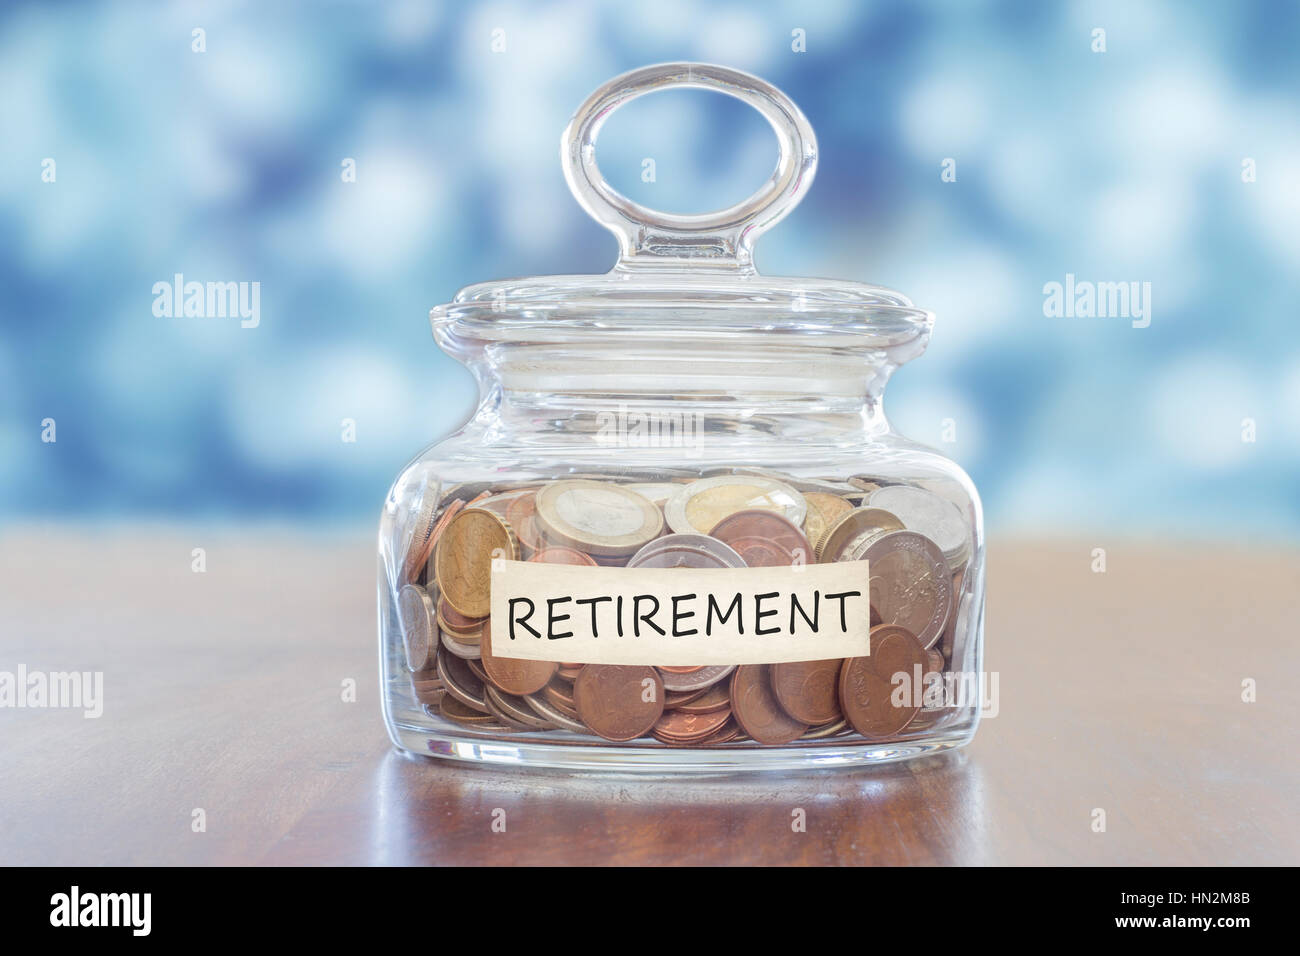 pension savings Stock Photo